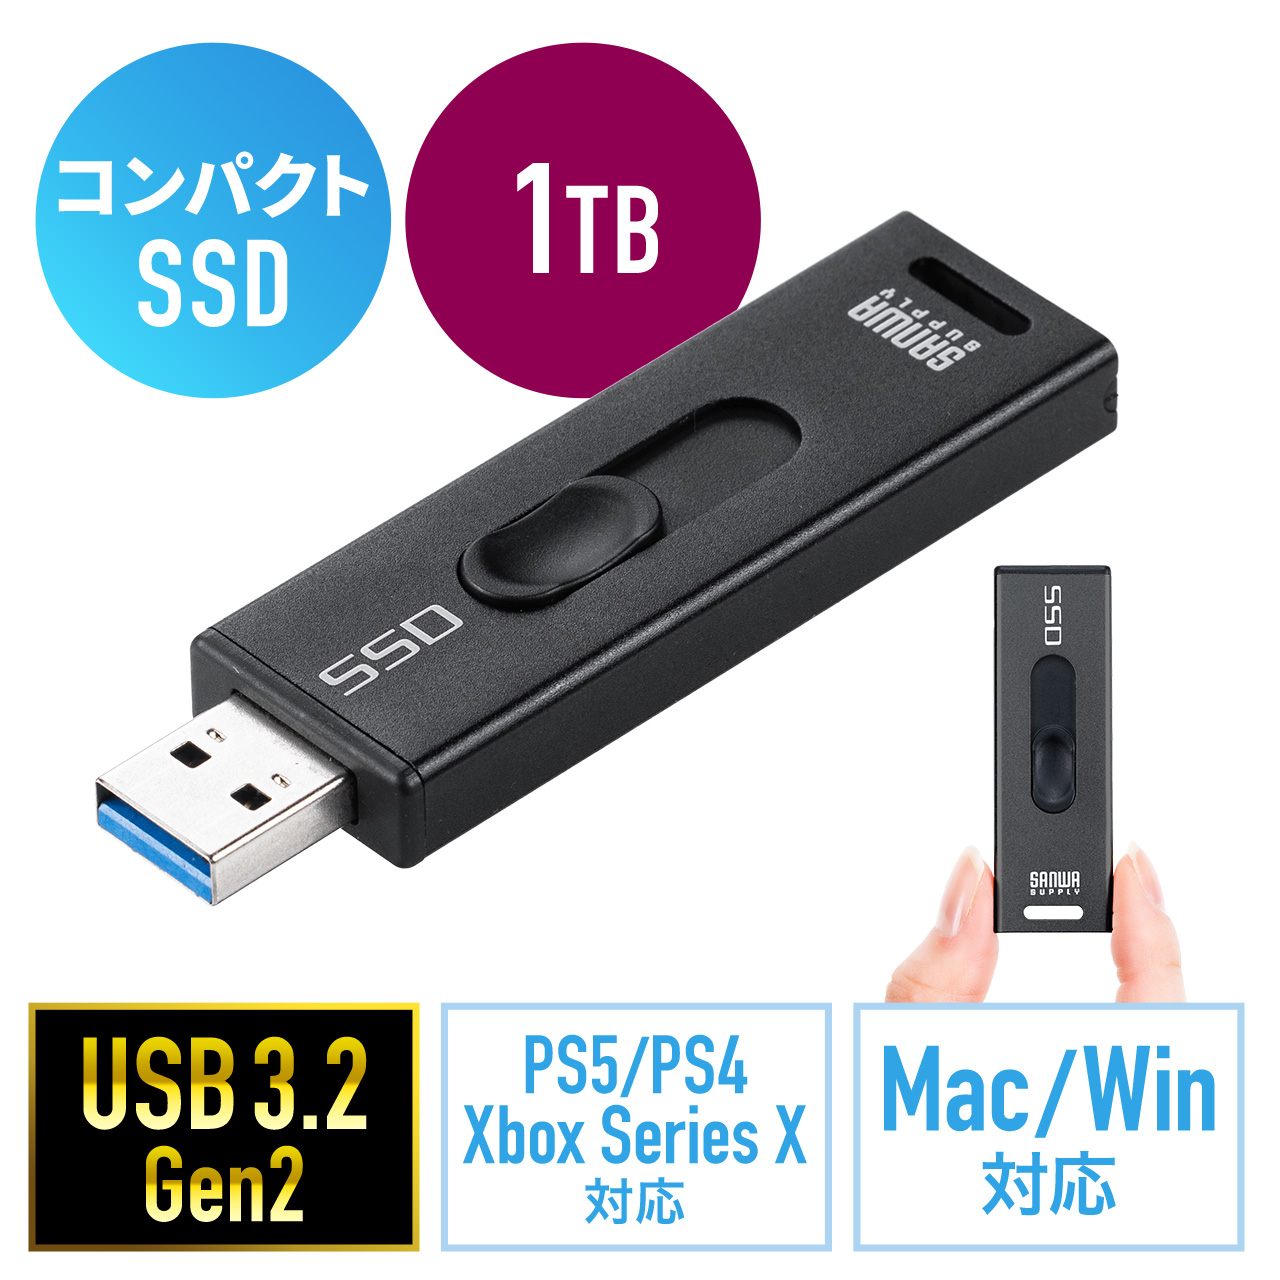 スティック型SSD 外付け USB3.2 Gen2 小型 1TB テレビ録画 ゲーム機 PS5/PS4/Xbox Series X スライド式 直挿し  ブラック 600-USSD1TBBK |サンワダイレクト